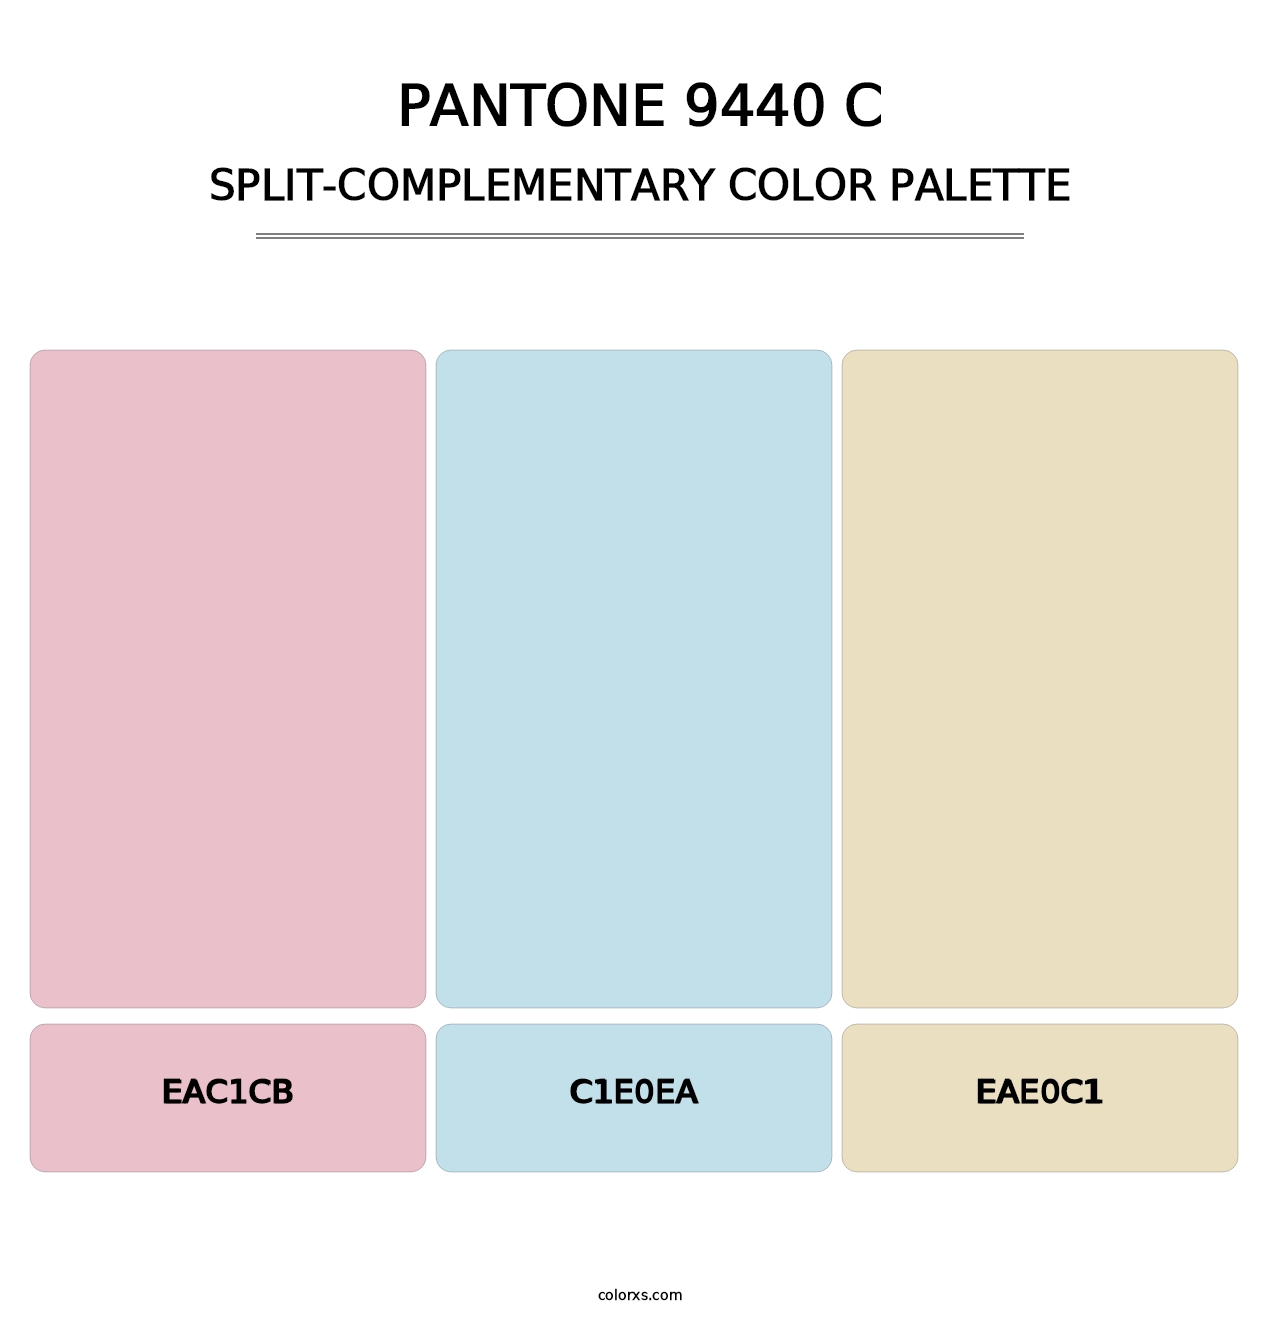 PANTONE 9440 C - Split-Complementary Color Palette